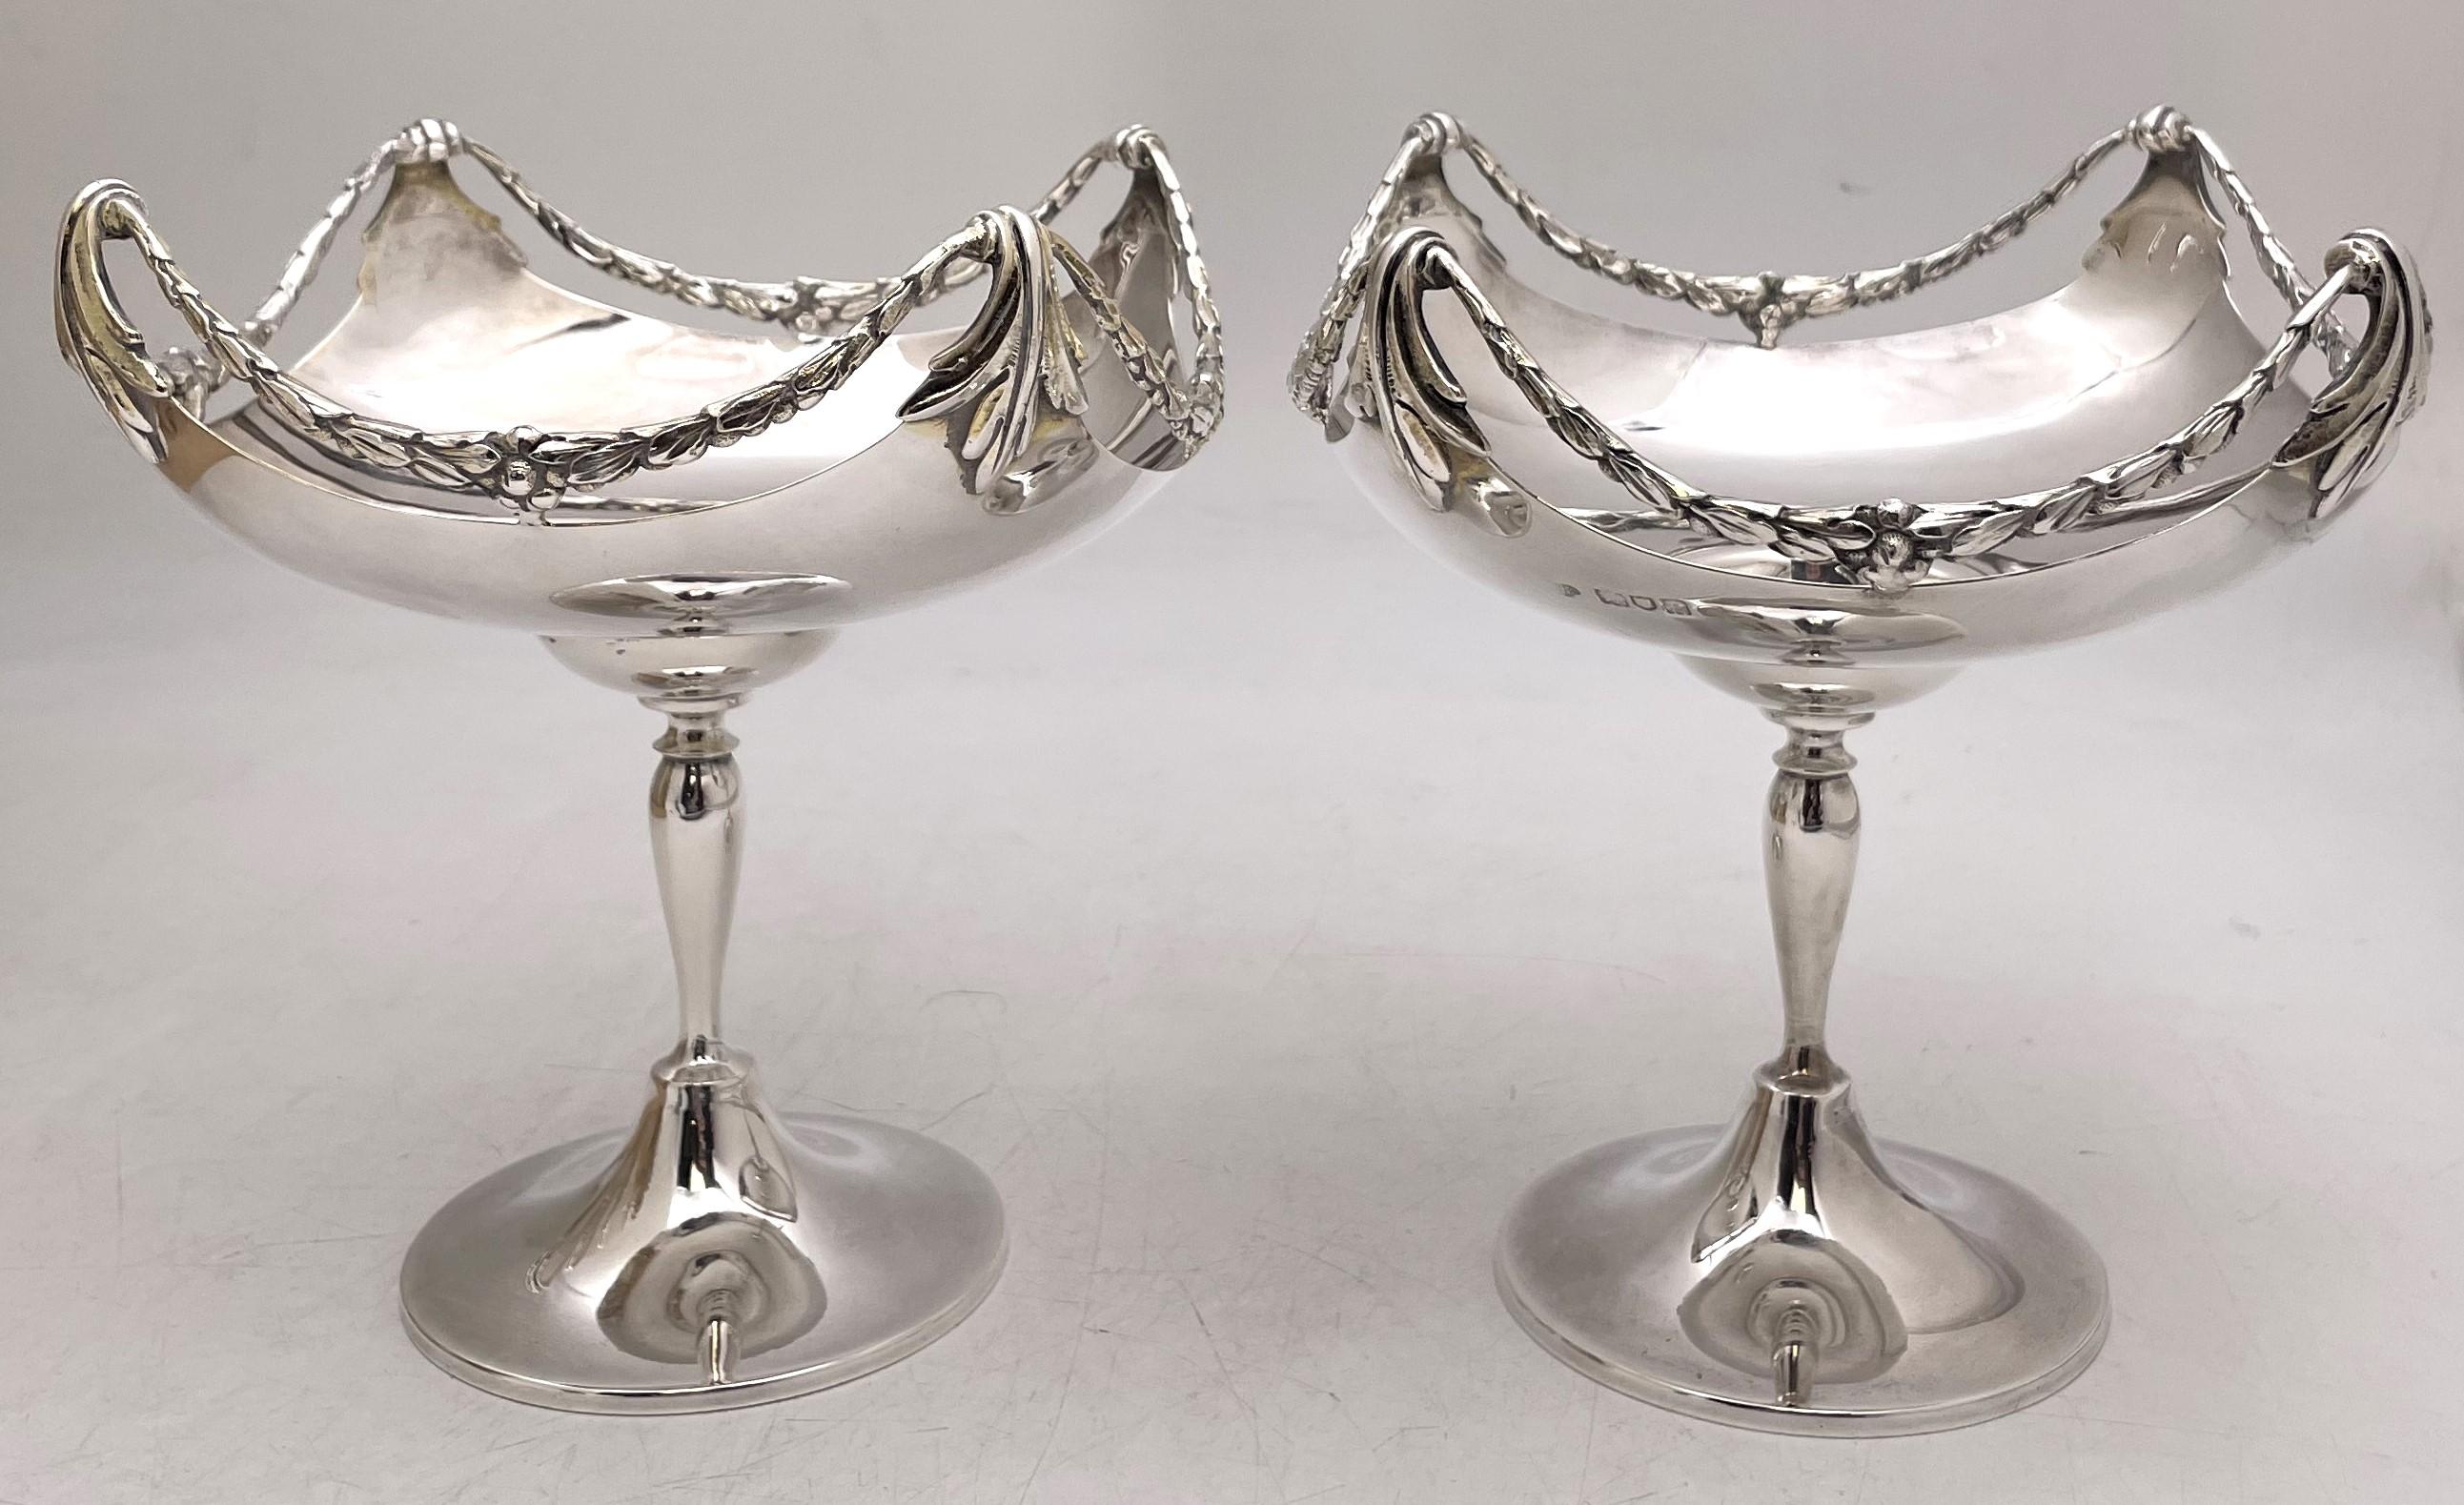 Paire de compotes ou bols à pied en argent sterling de Goldsmiths & Silversmiths, datant de 1910, magnifiquement ornés de motifs de couronnes. Ils mesurent environ 7'' de hauteur par 6 1/2'' de profondeur, pèsent 22,7 onces troy et portent les